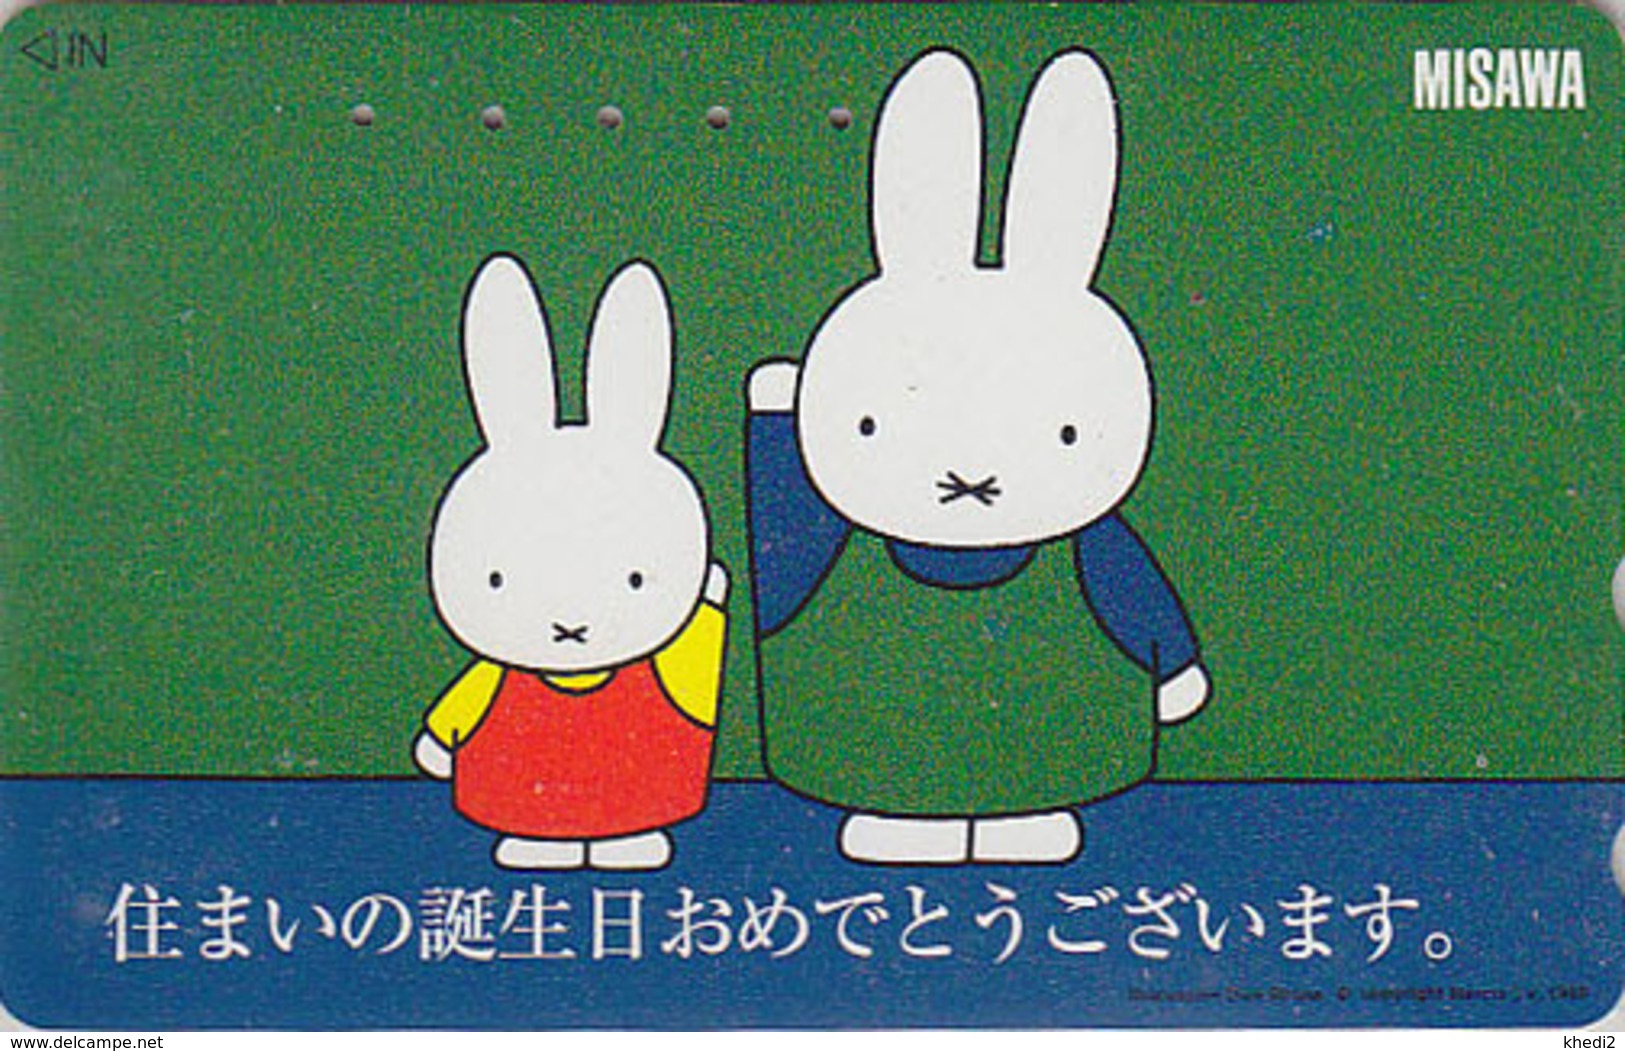 Télécarte Japon / 110-016 - BD COMICS - LAPIN / MISAWA - DICK BRUNA - MIFFY - RABBIT Japan Phonecard - KANINCHEN - 62 - Conejos